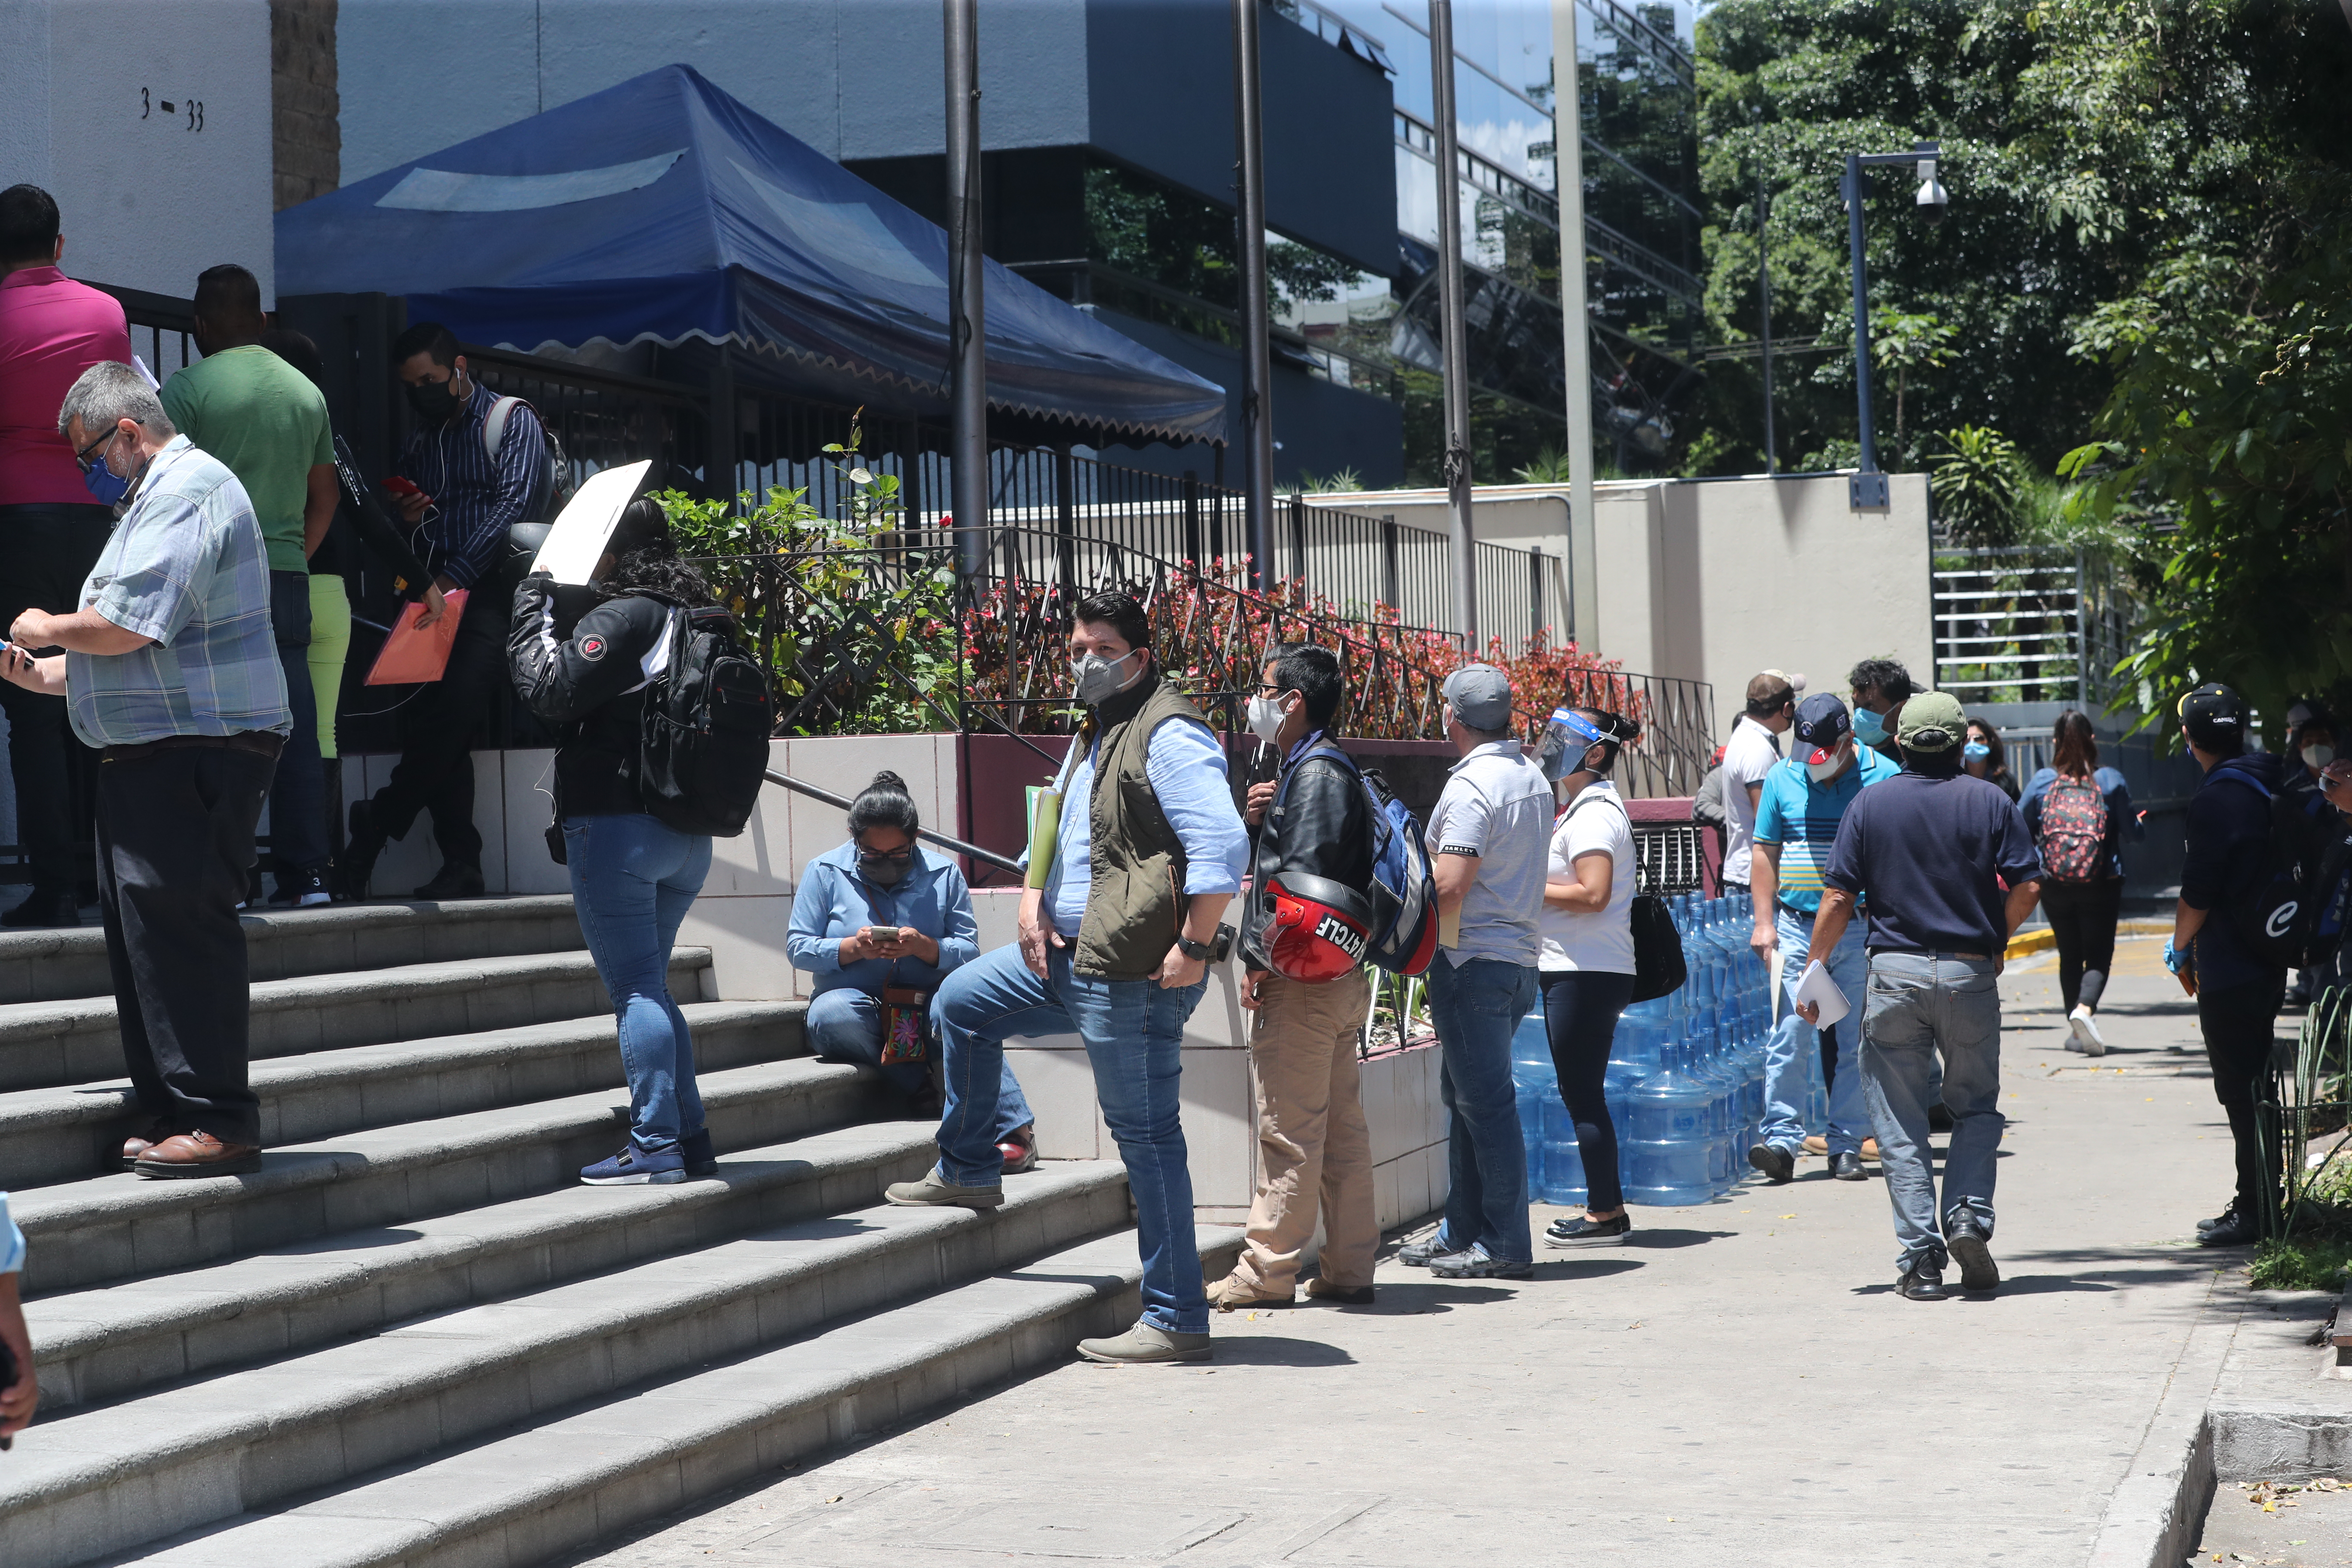 El Ministerio de Trabajo tiene registrados la negociación de 88 pactos colectivos públicos de 2008 al 2019. (Foto Prensa Libre: Hemeroteca) 